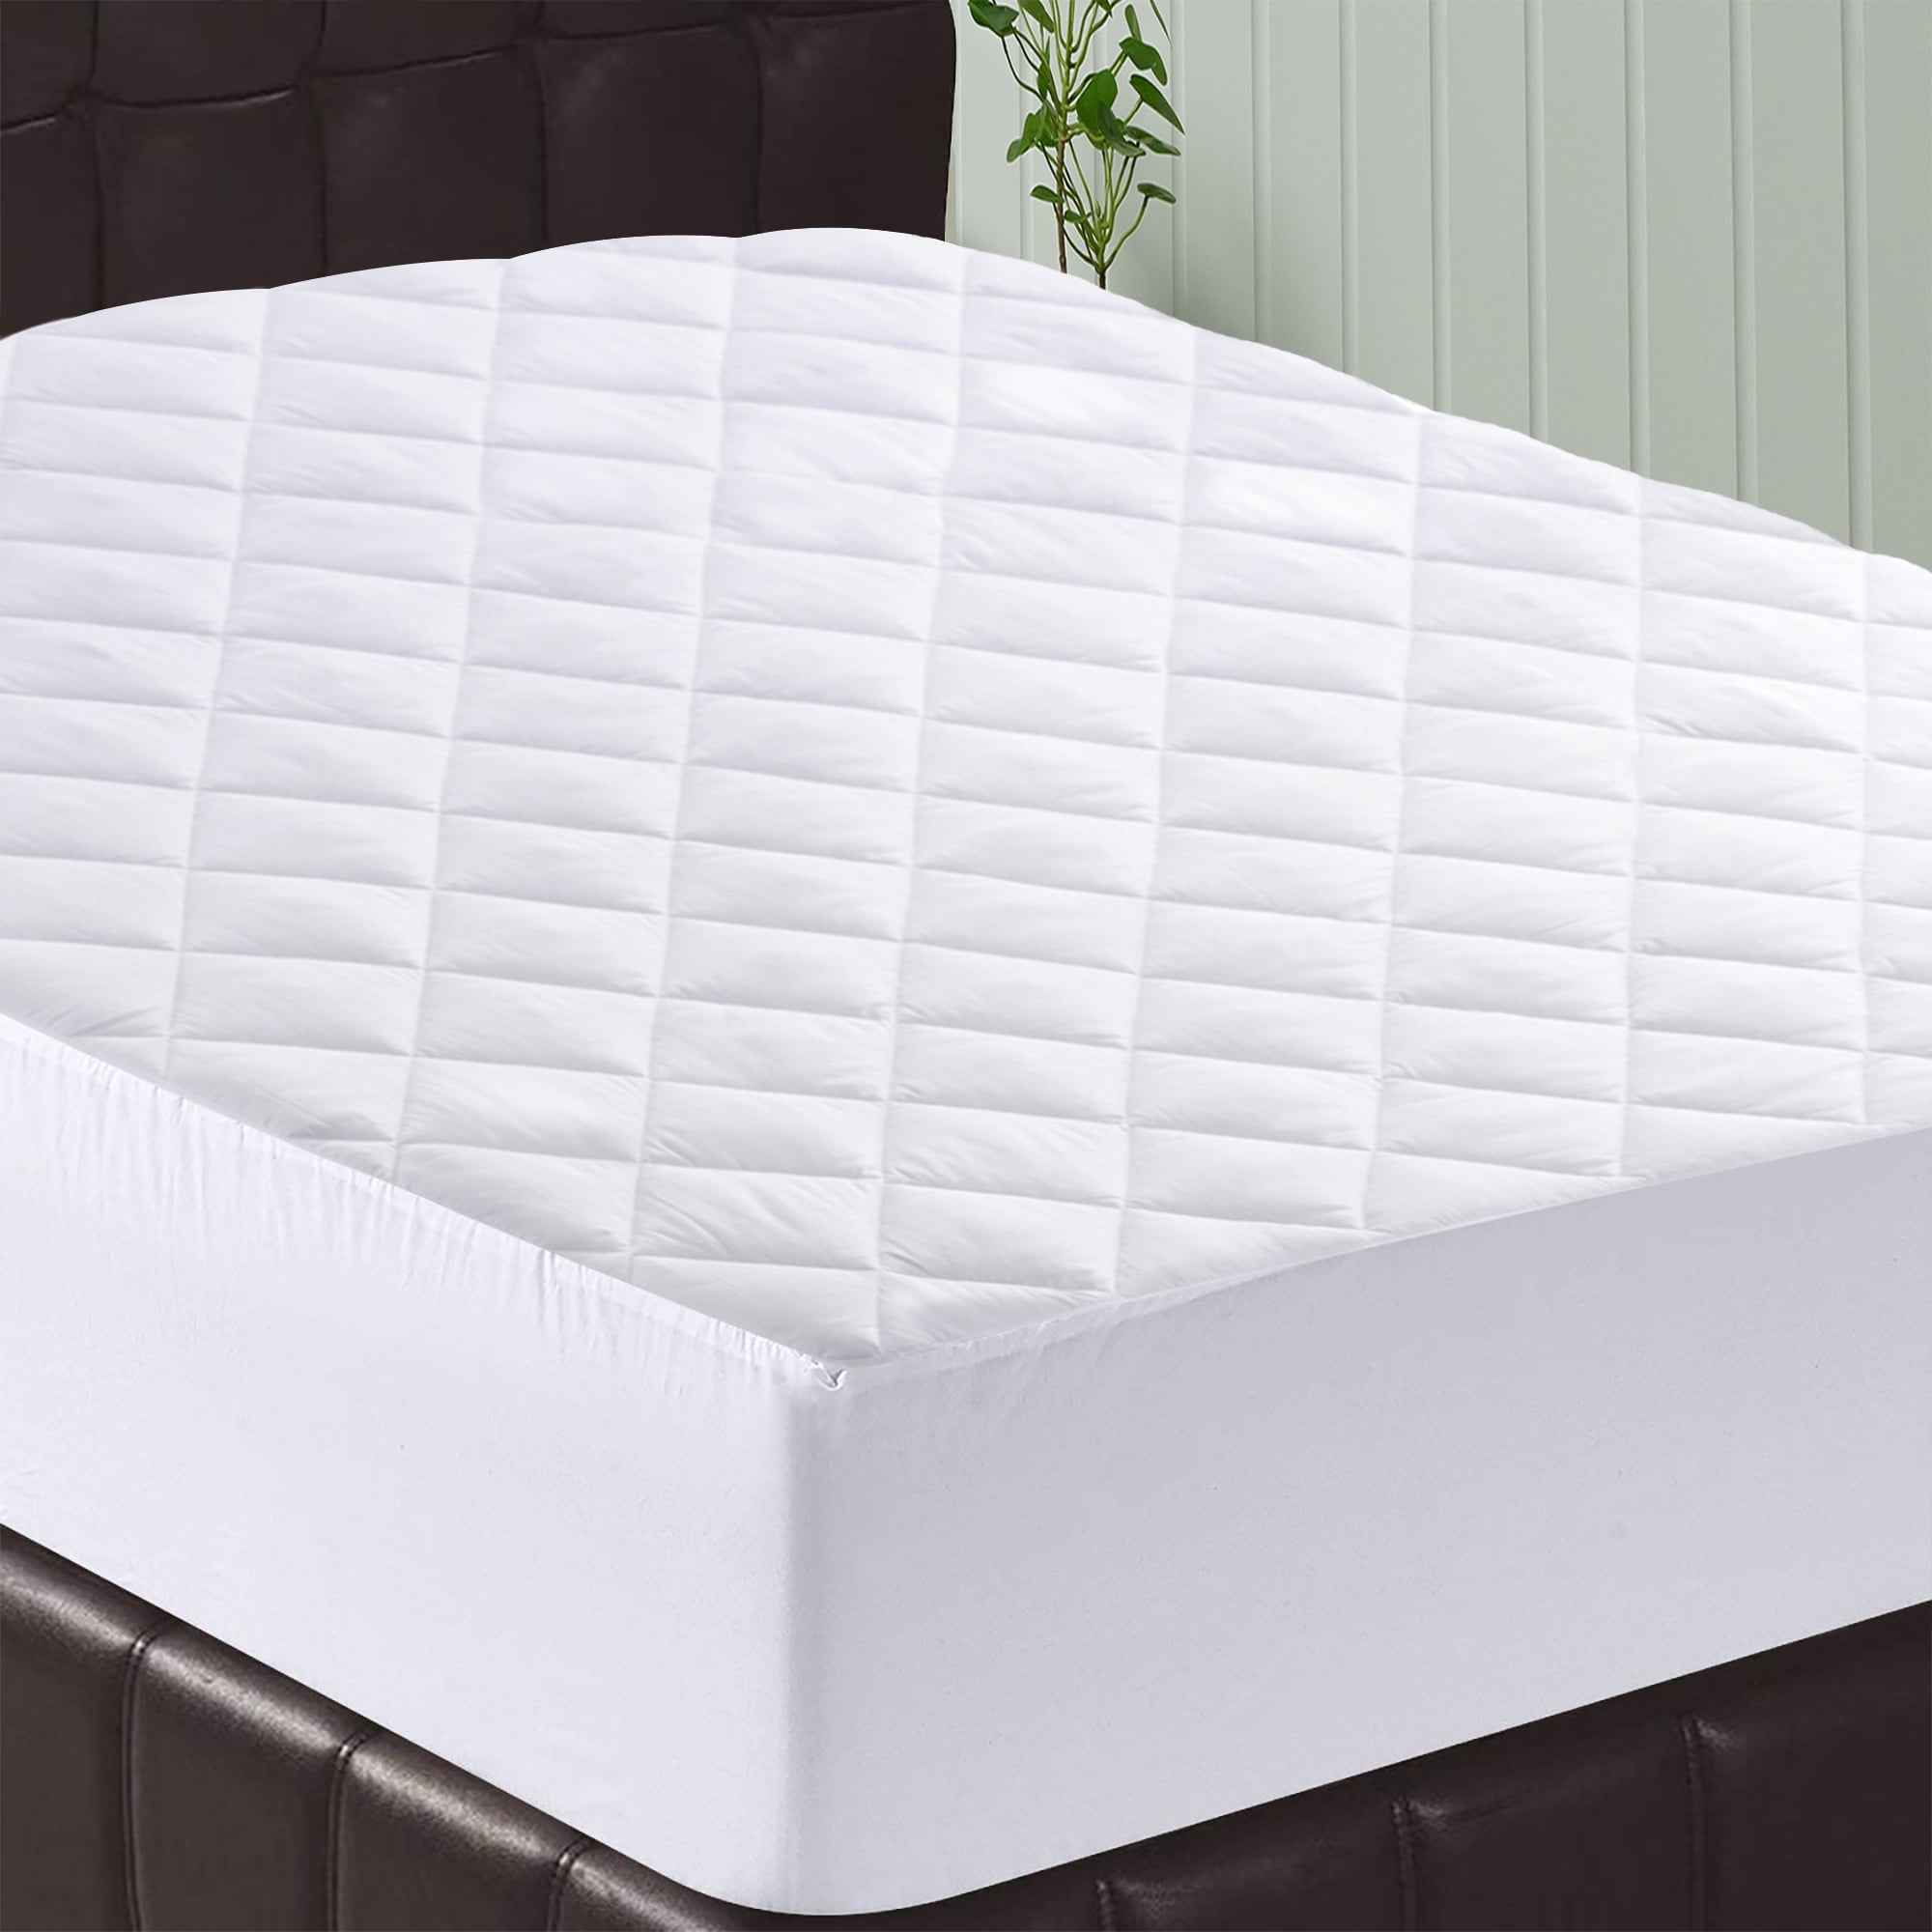 Beautyrest Black Luxury bed Mattress Pad Twin XL 38”x80” 400 thread TENCEL New 